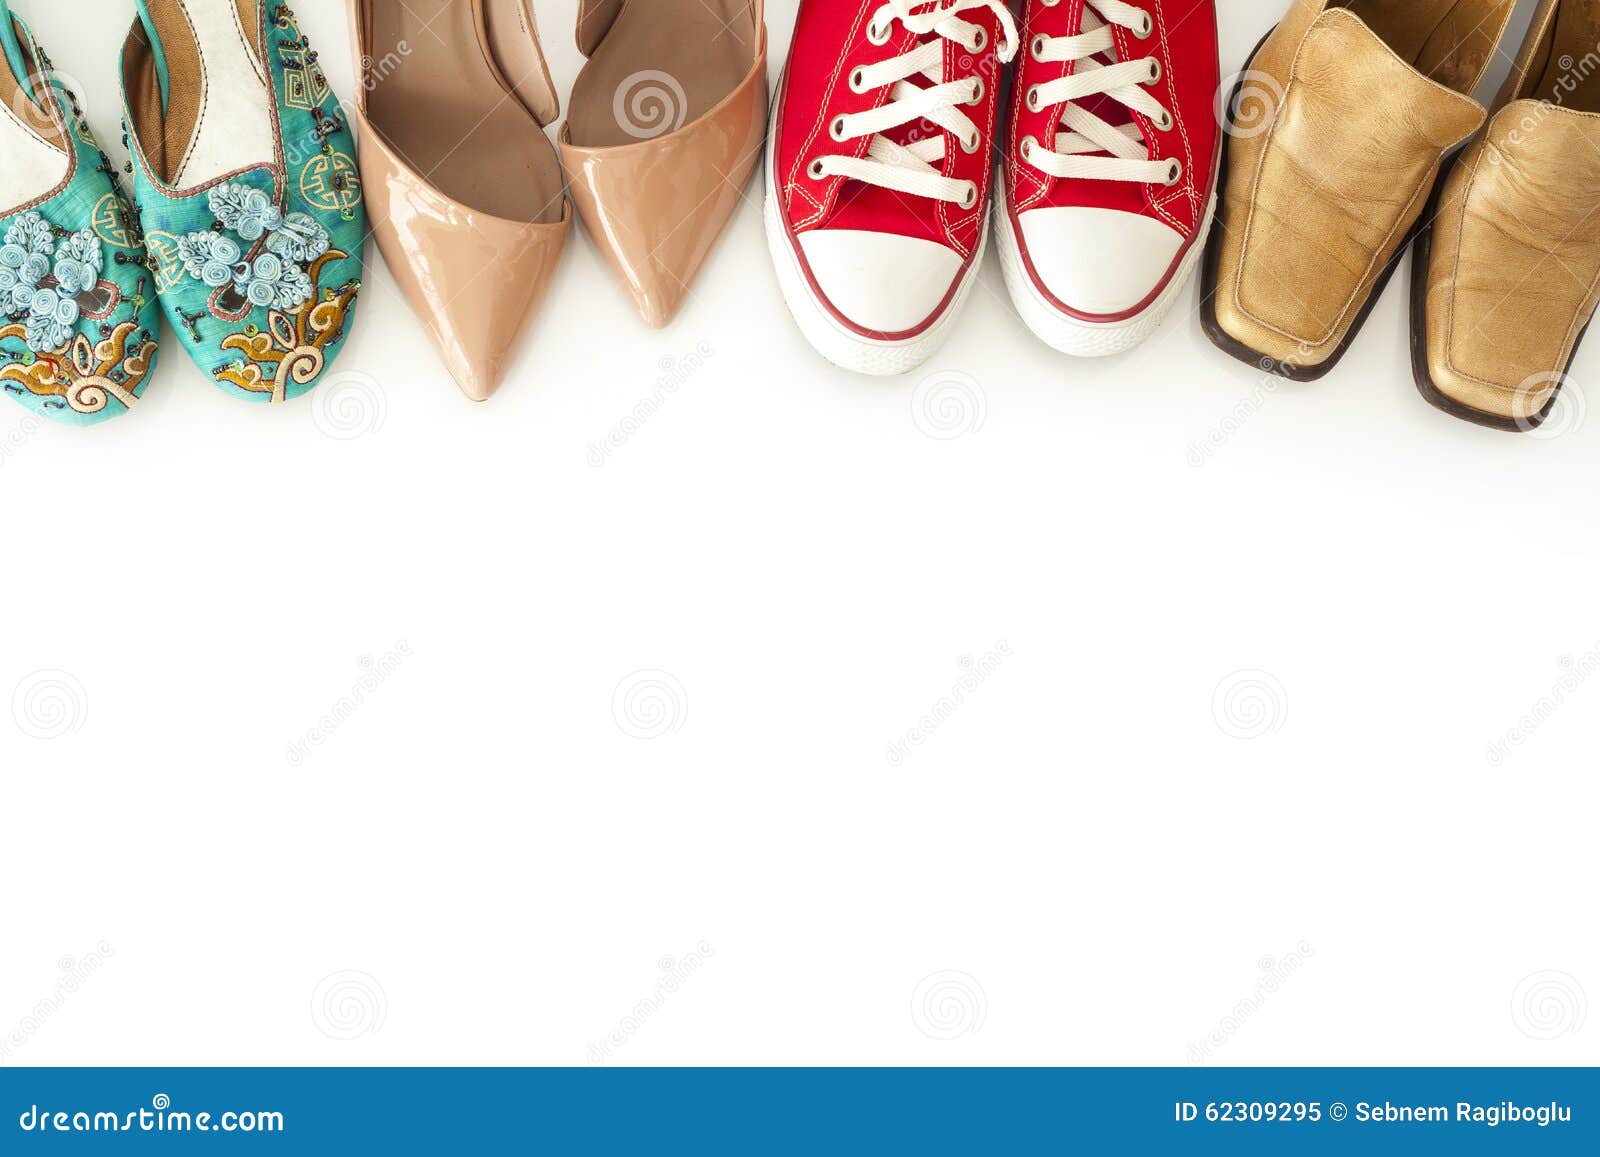 Пара туфлей несколько полотенец старых профессоров. Ретро туфли женские. Ноги в обуви на белом фоне. Туфли ретро белые. Женские обуви стоковые картинки исходники.